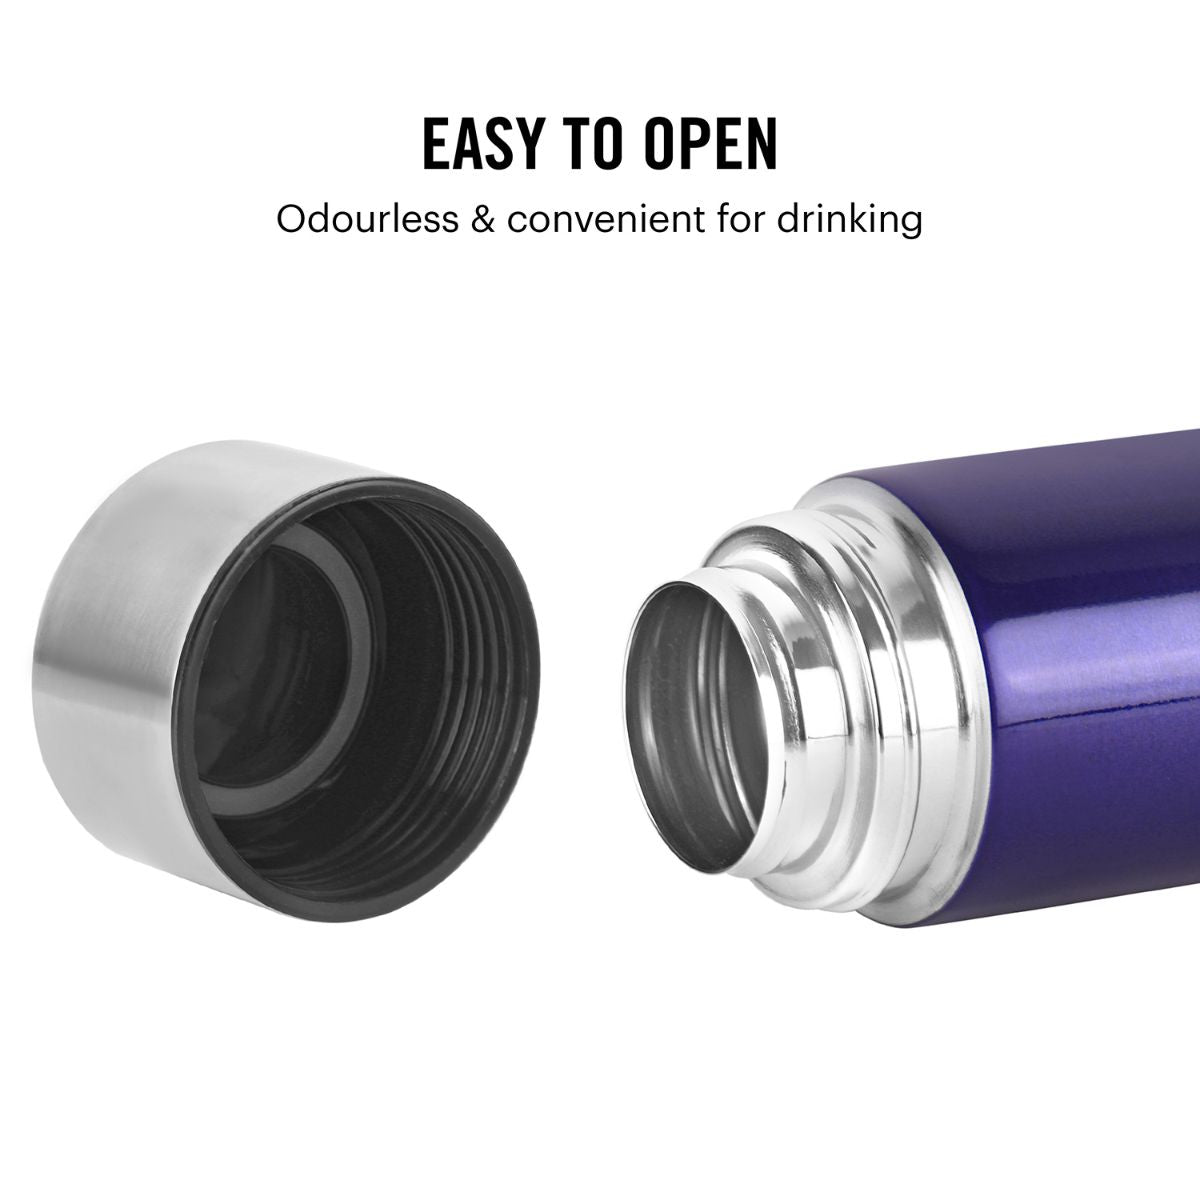 H2O Stainless Steel Water Bottle, 1000ml Purple / 1000ml / 1 Piece